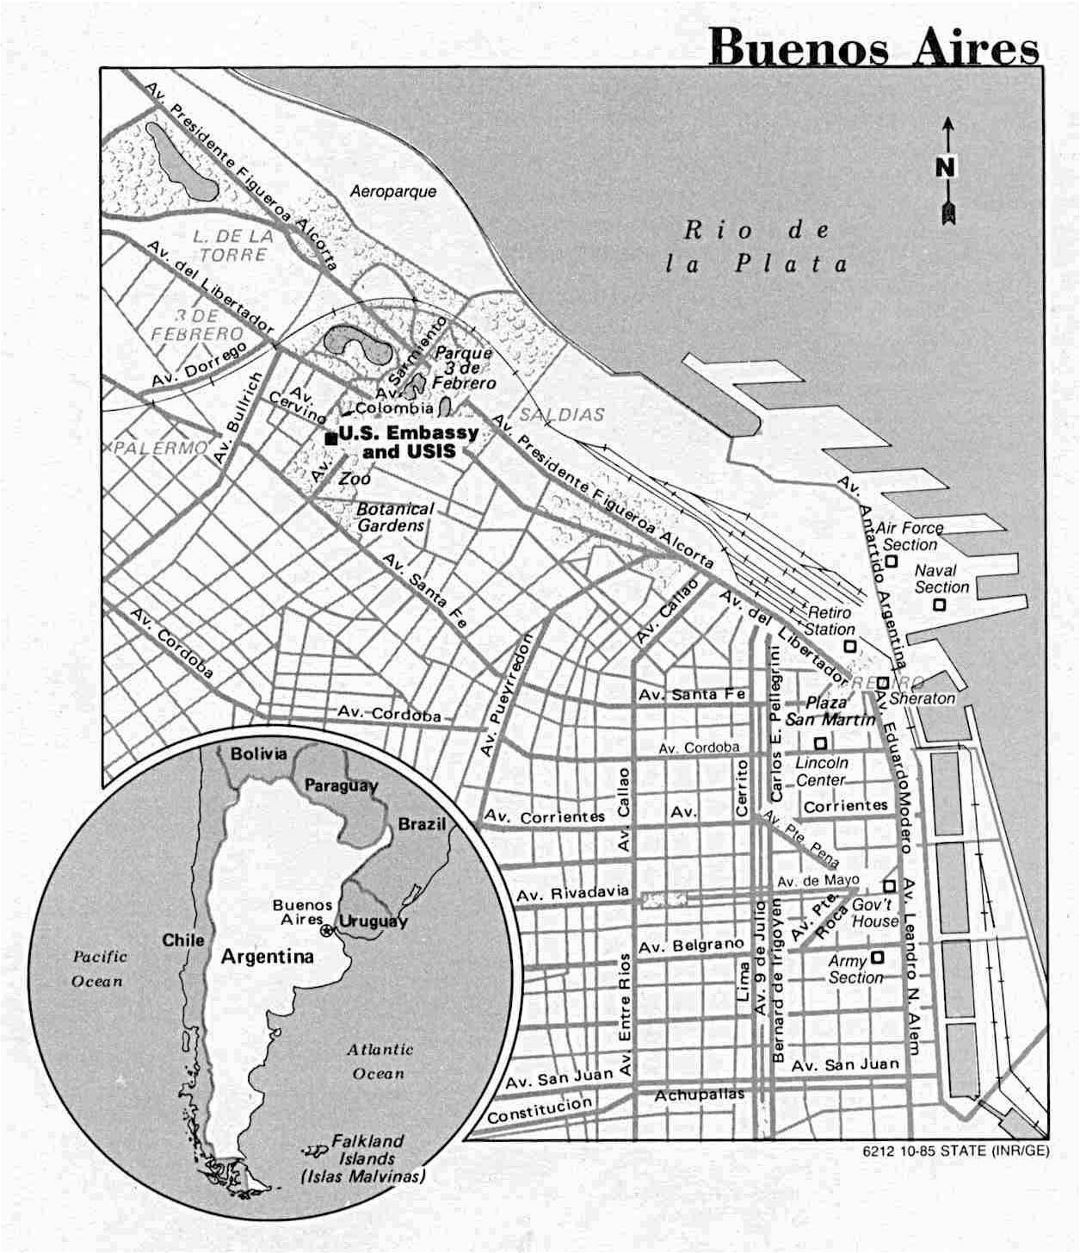 Grande mapa de ciudad de Buenos Aires Departamento de Estado de los EE. UU. - 1985